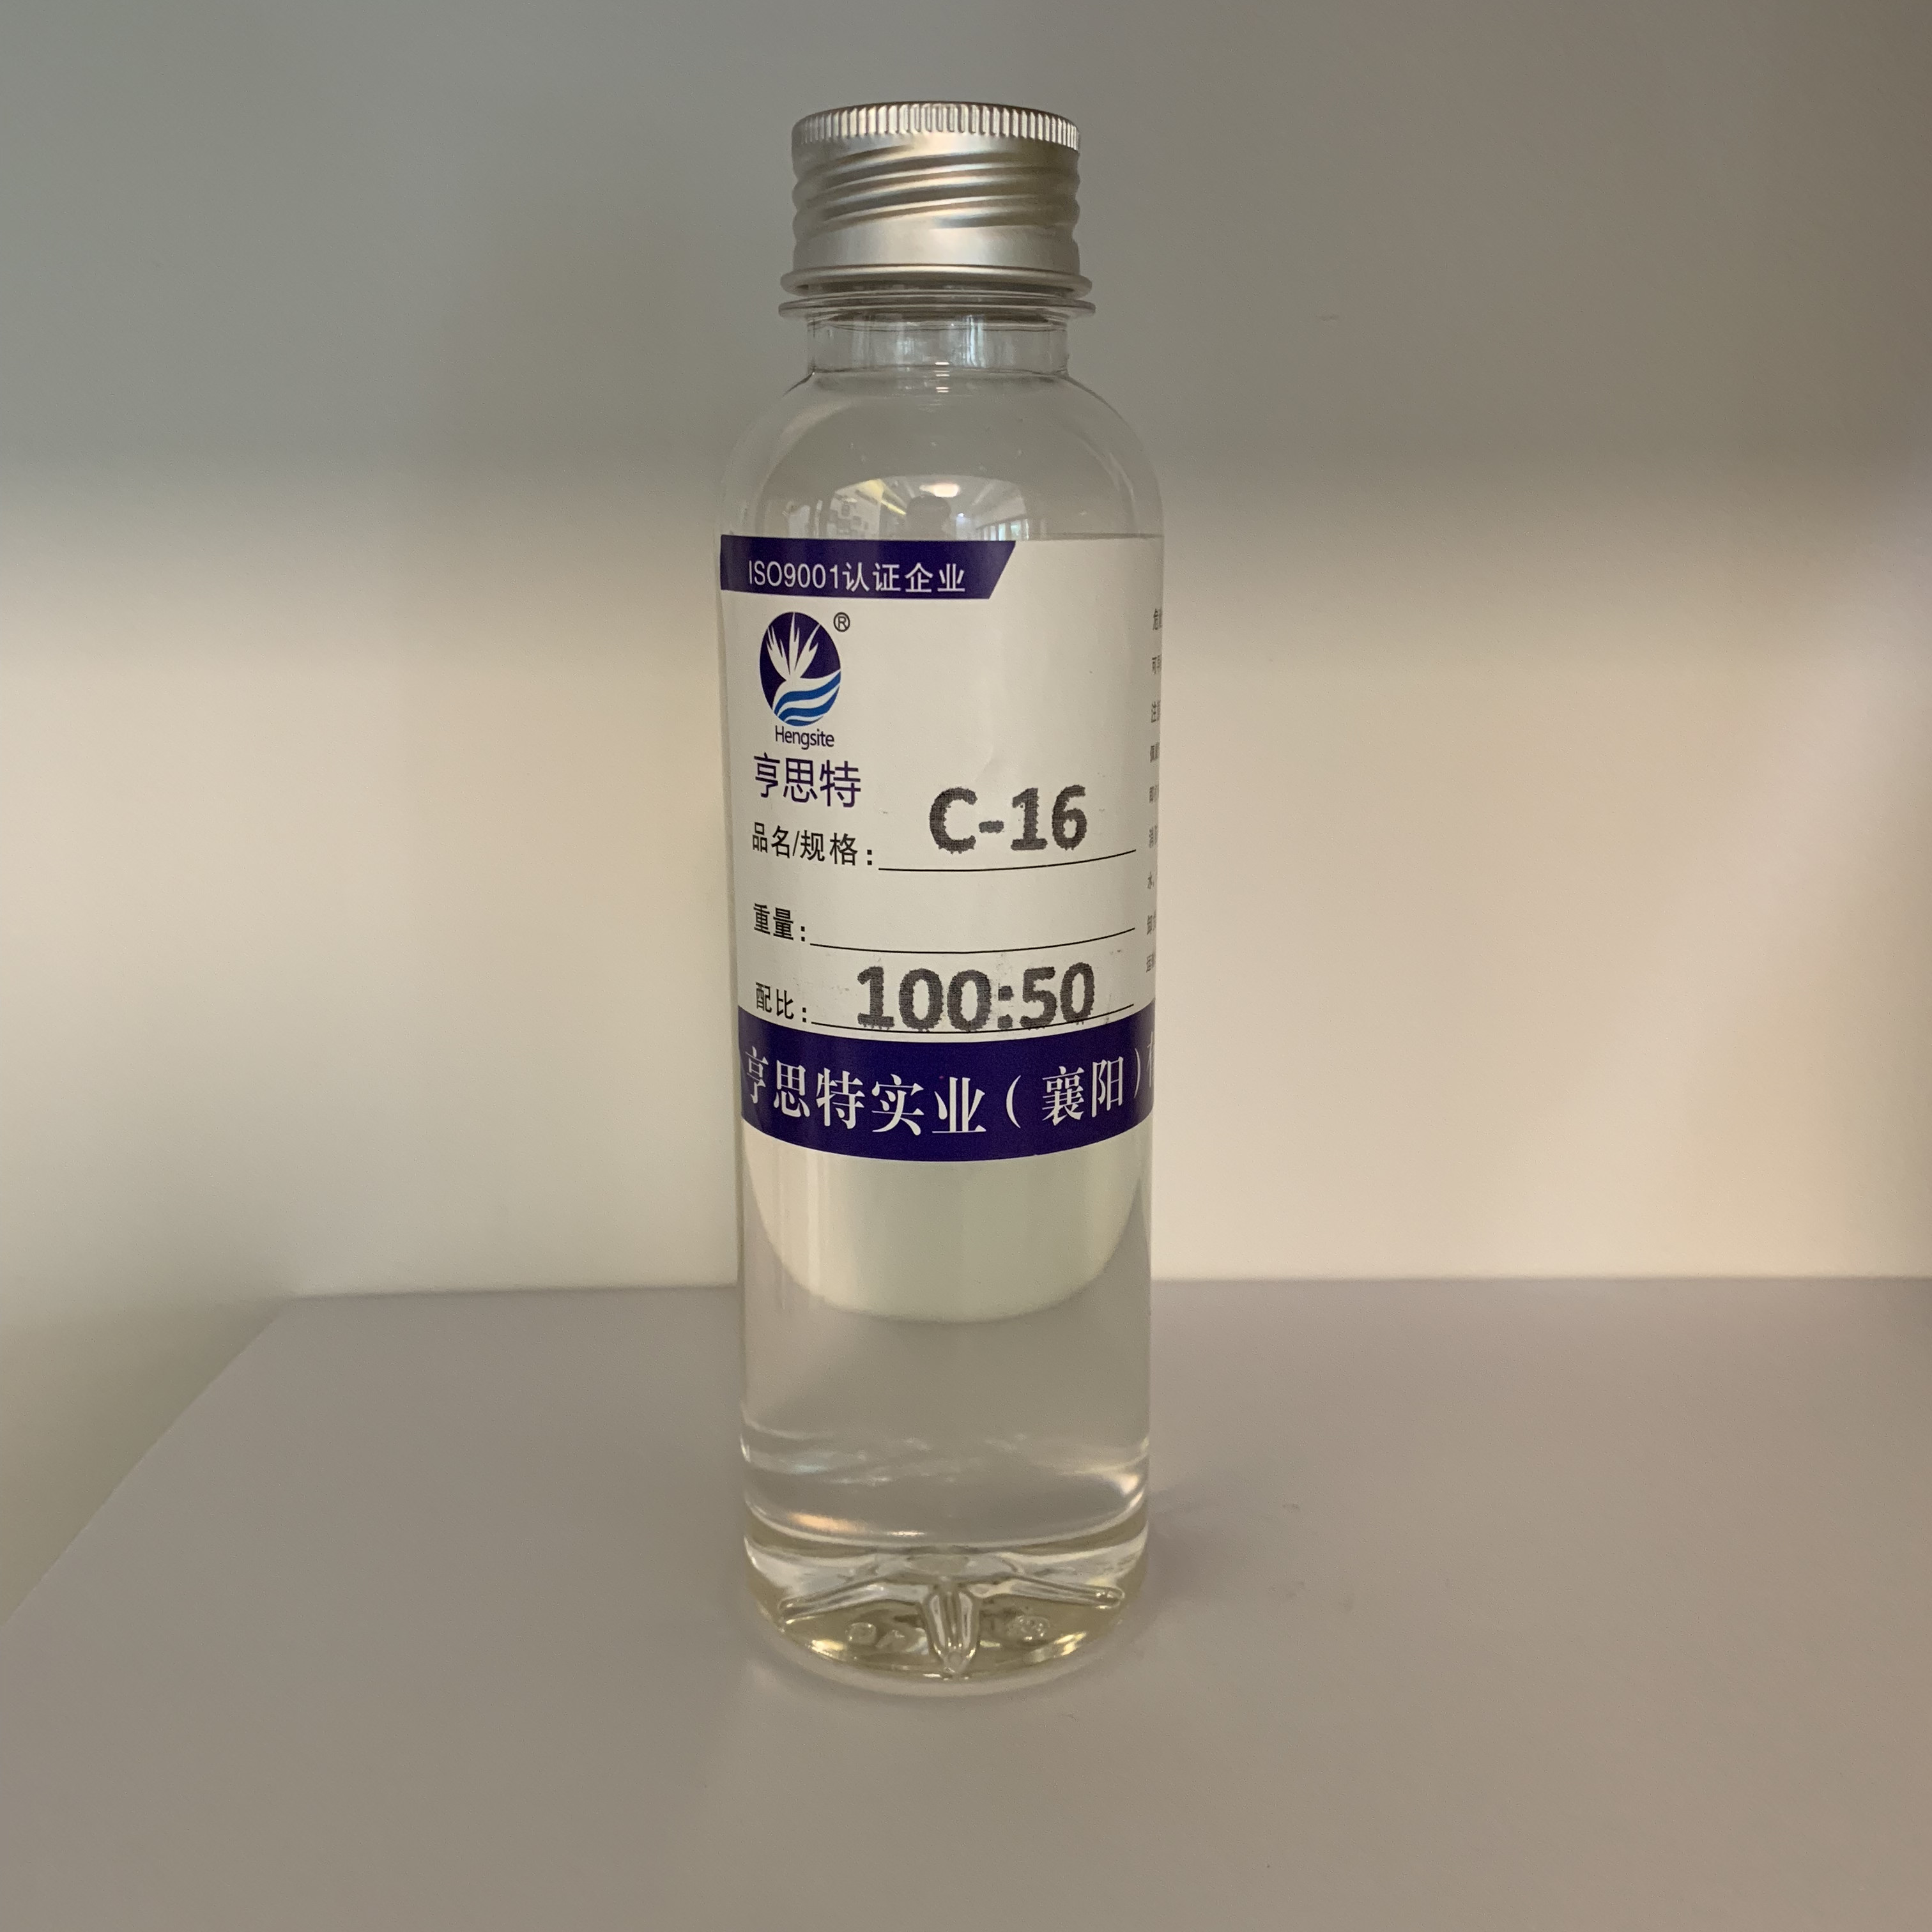 C-16面涂聚醚胺改性固化剂